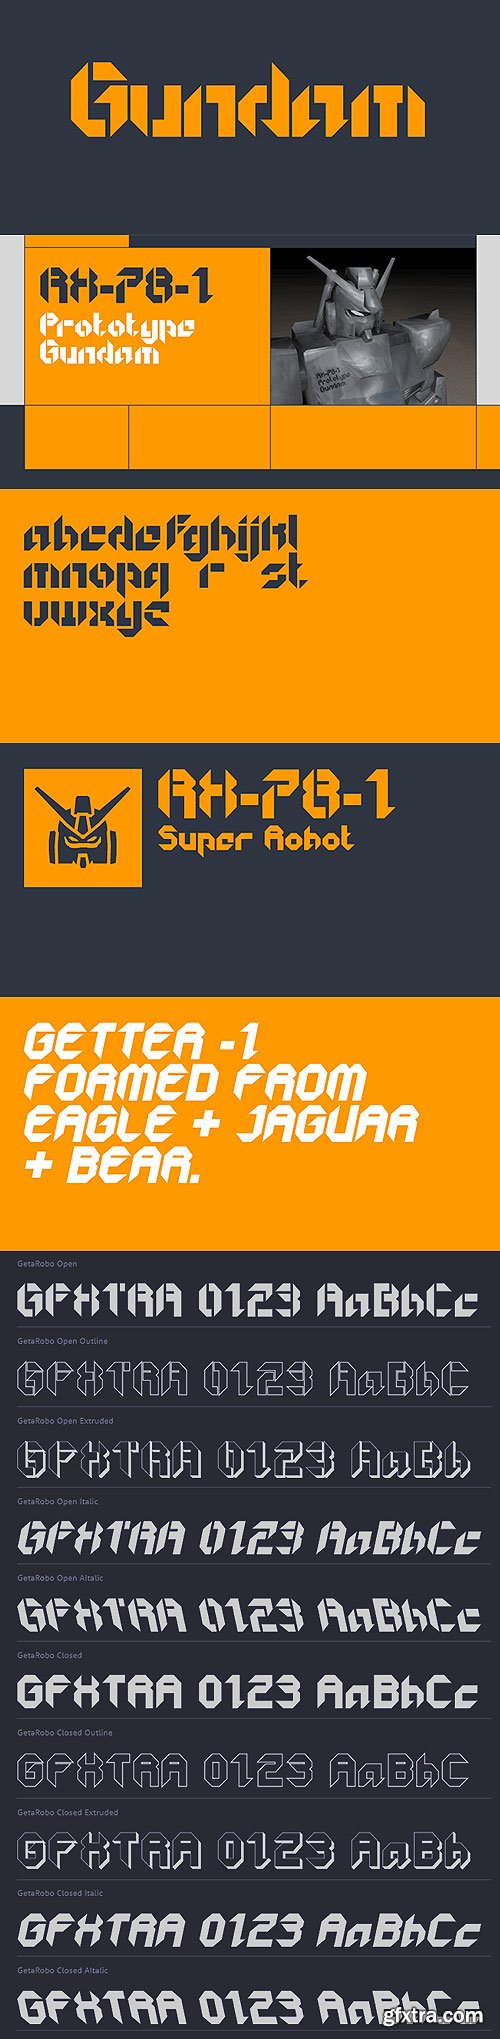 GetaRobo Font Family 10xOTF $247